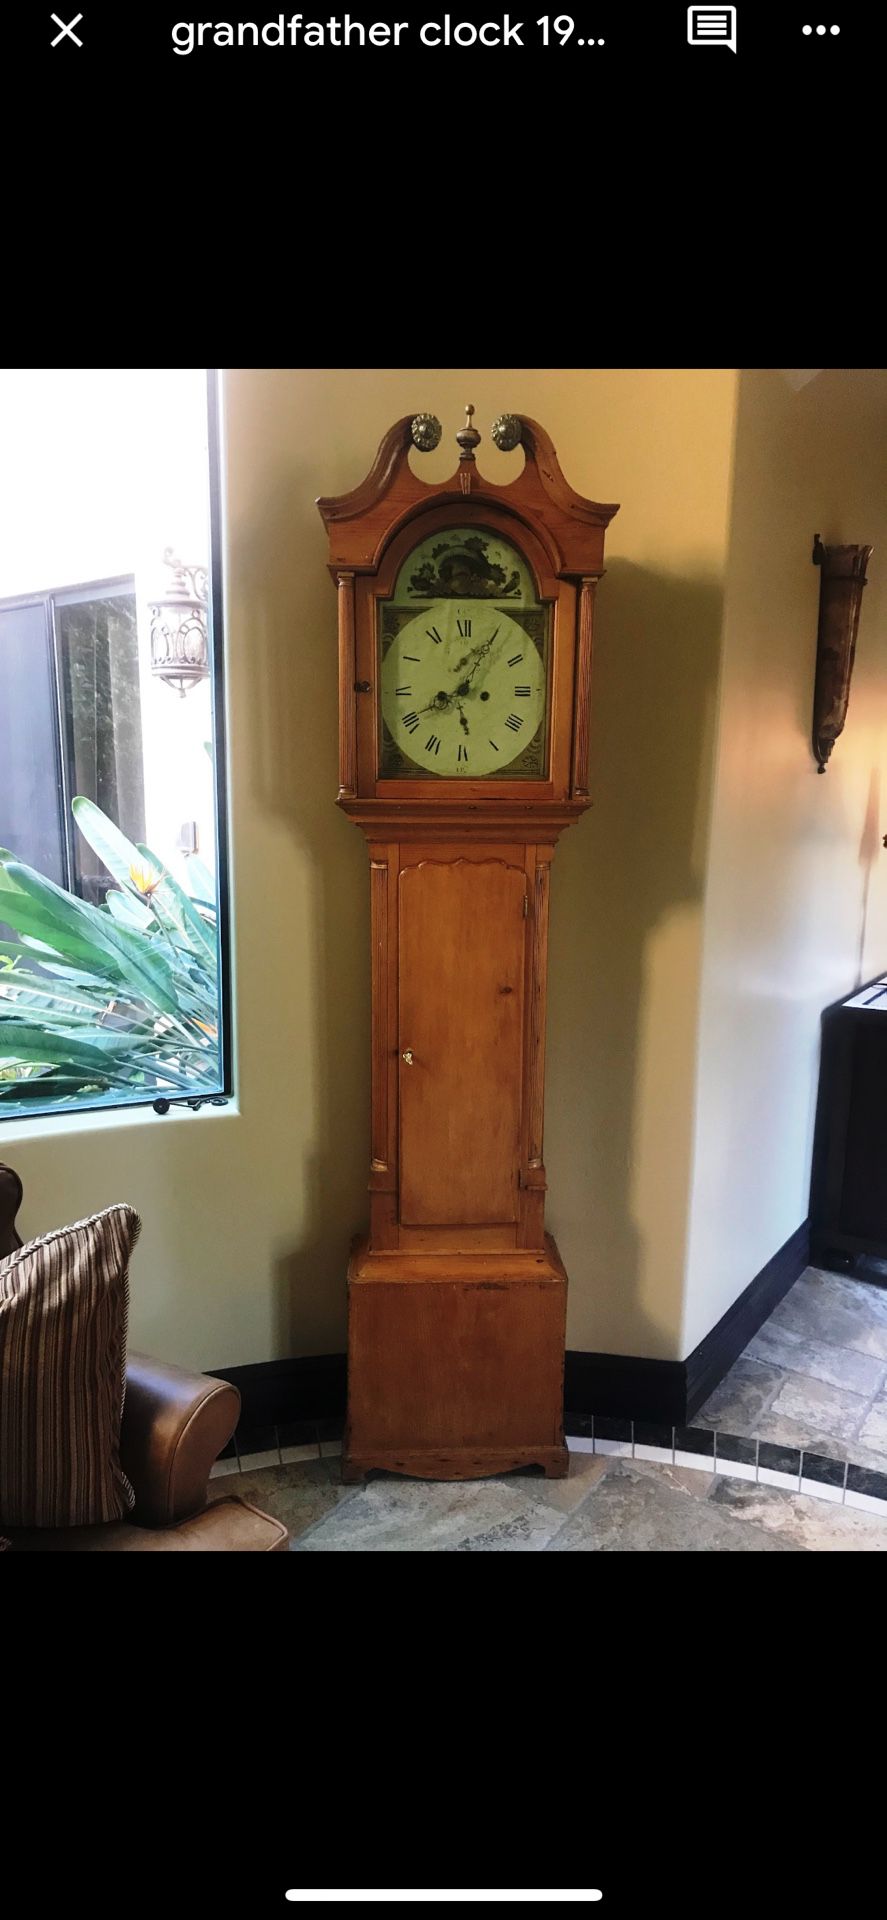 Grandfather Clock - 19th Century - Original Antique